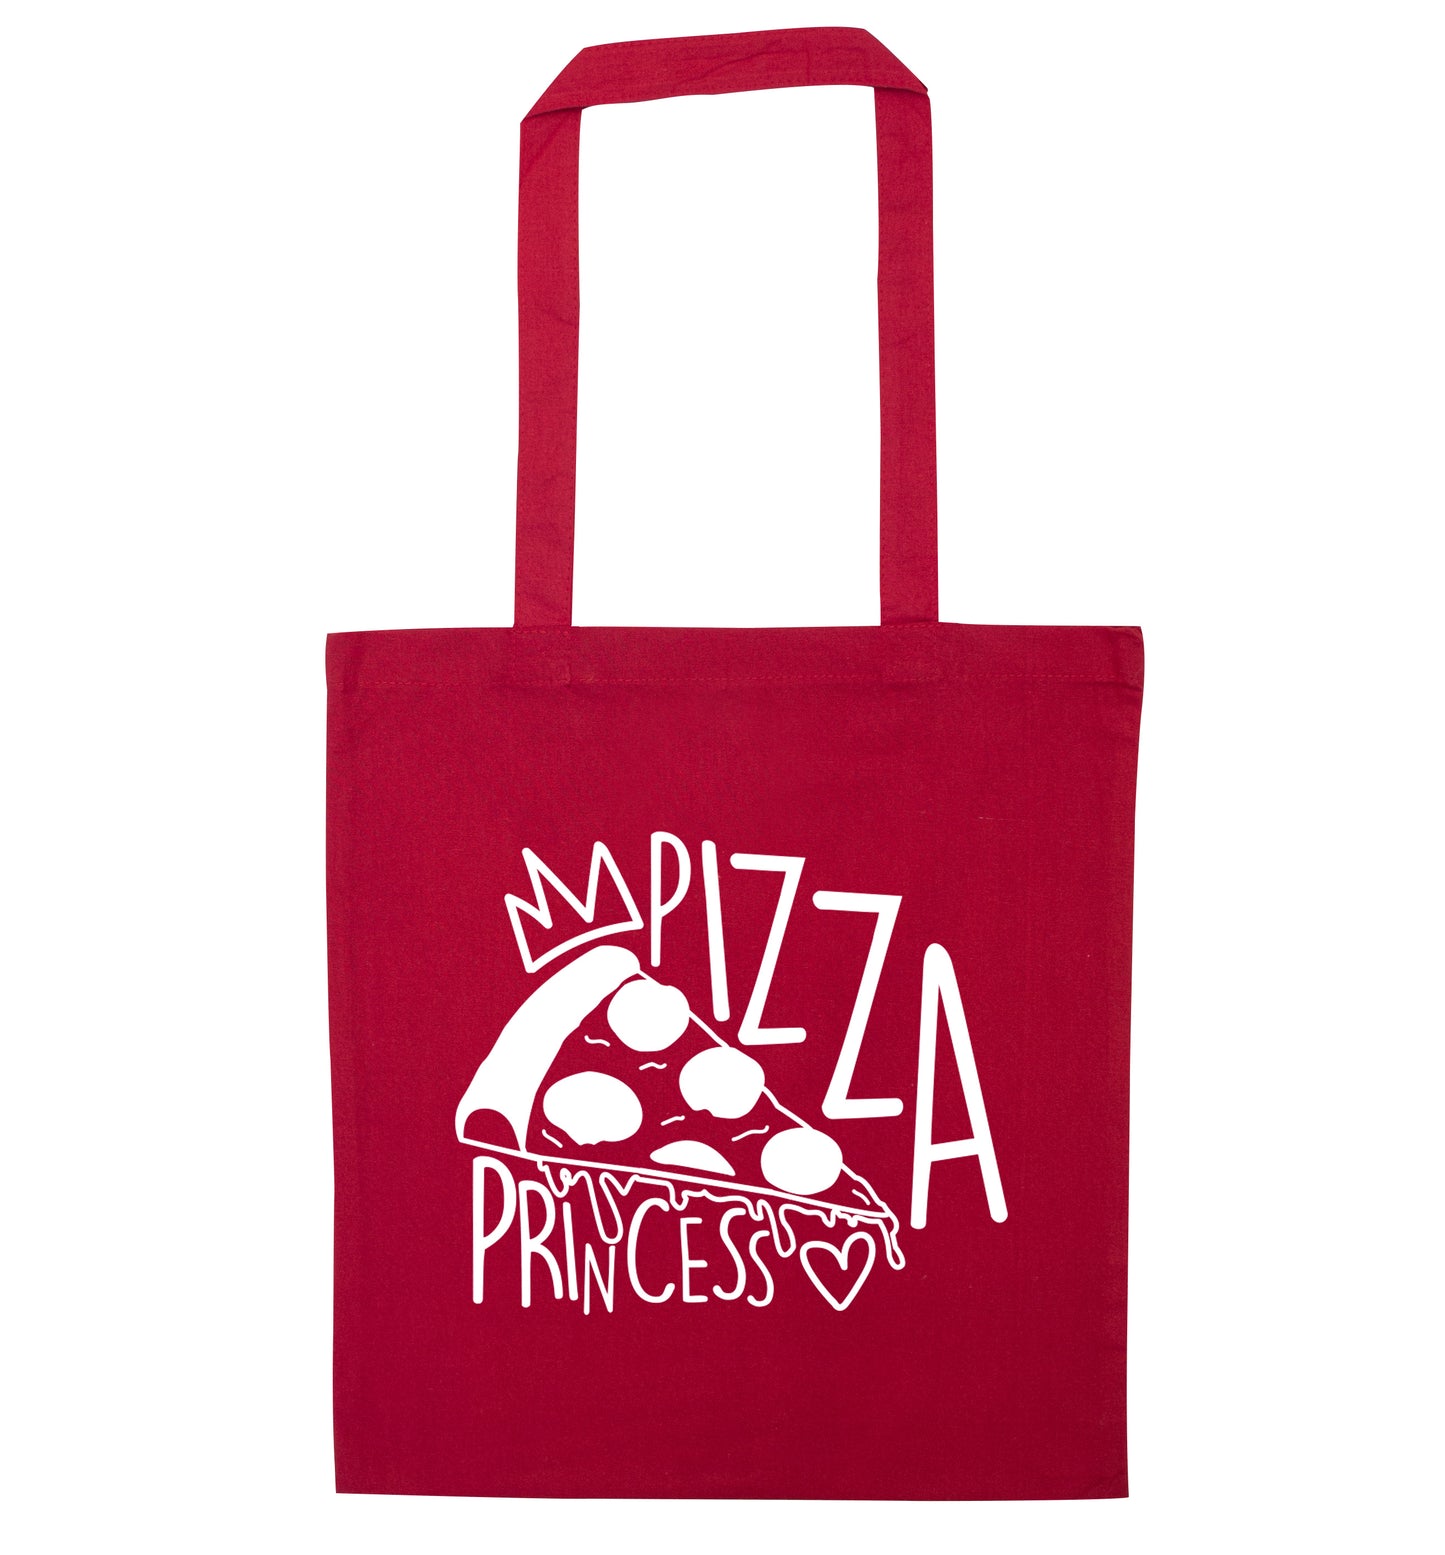 Pizza Princess red tote bag